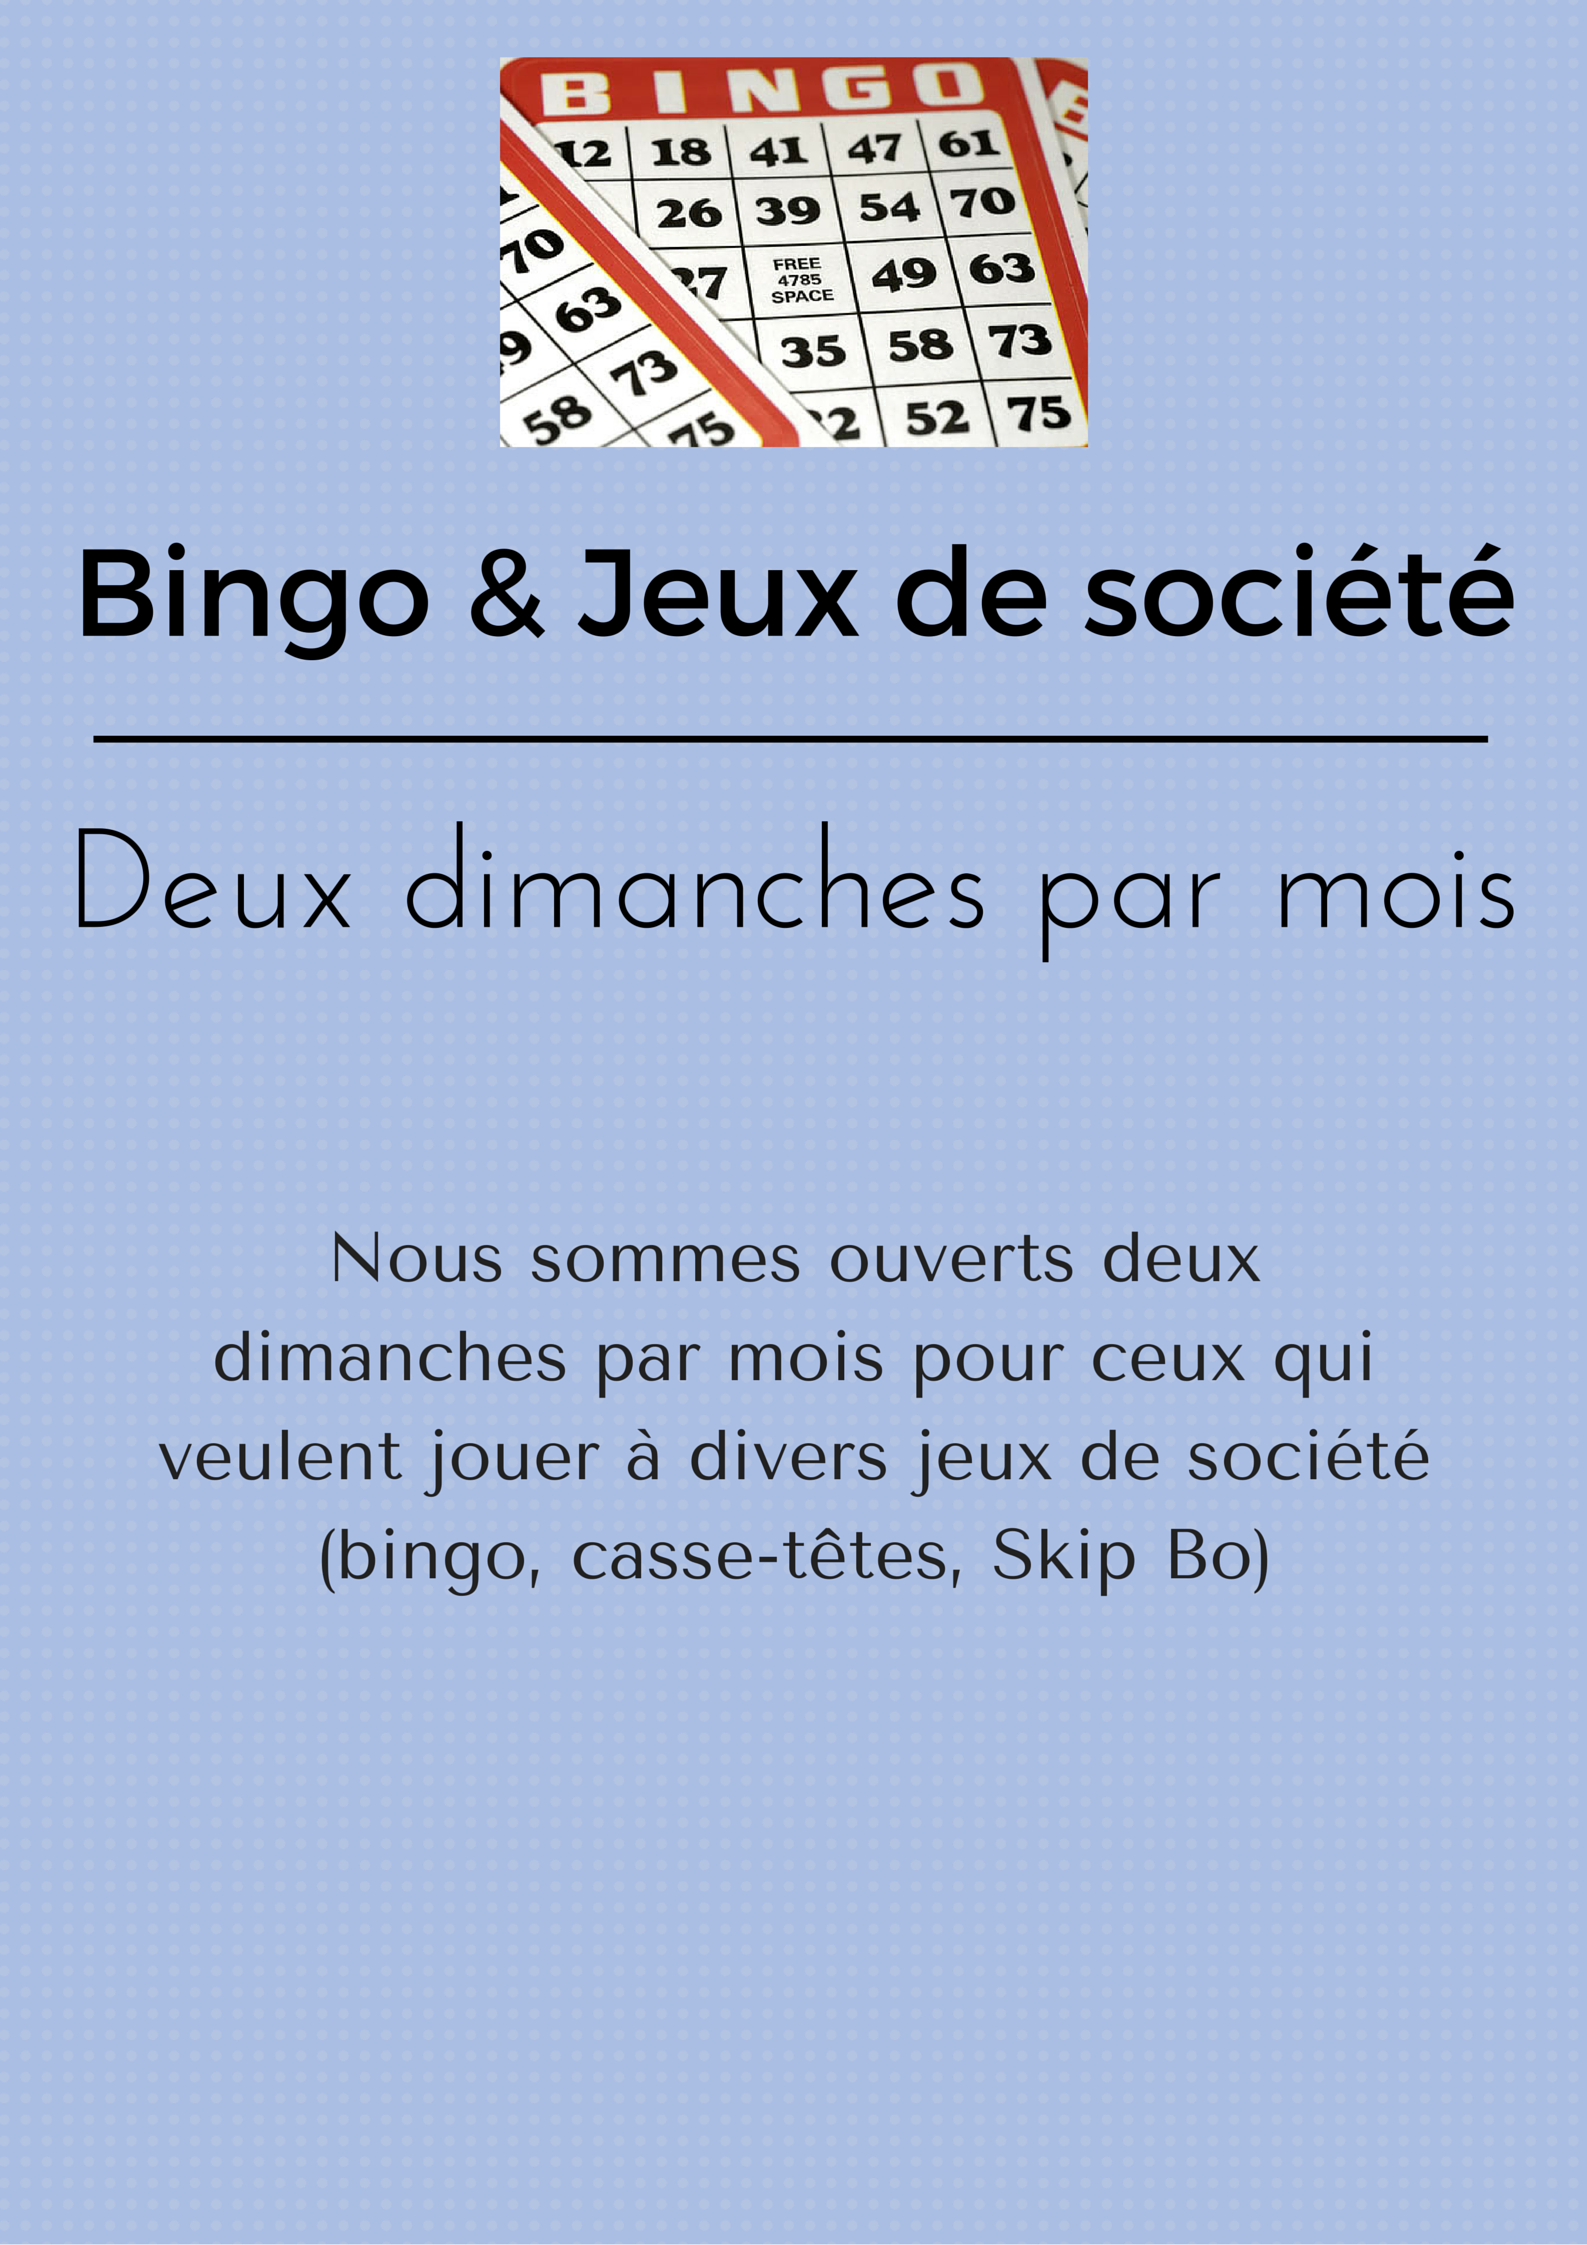 Bingo & Jeux de société (1)